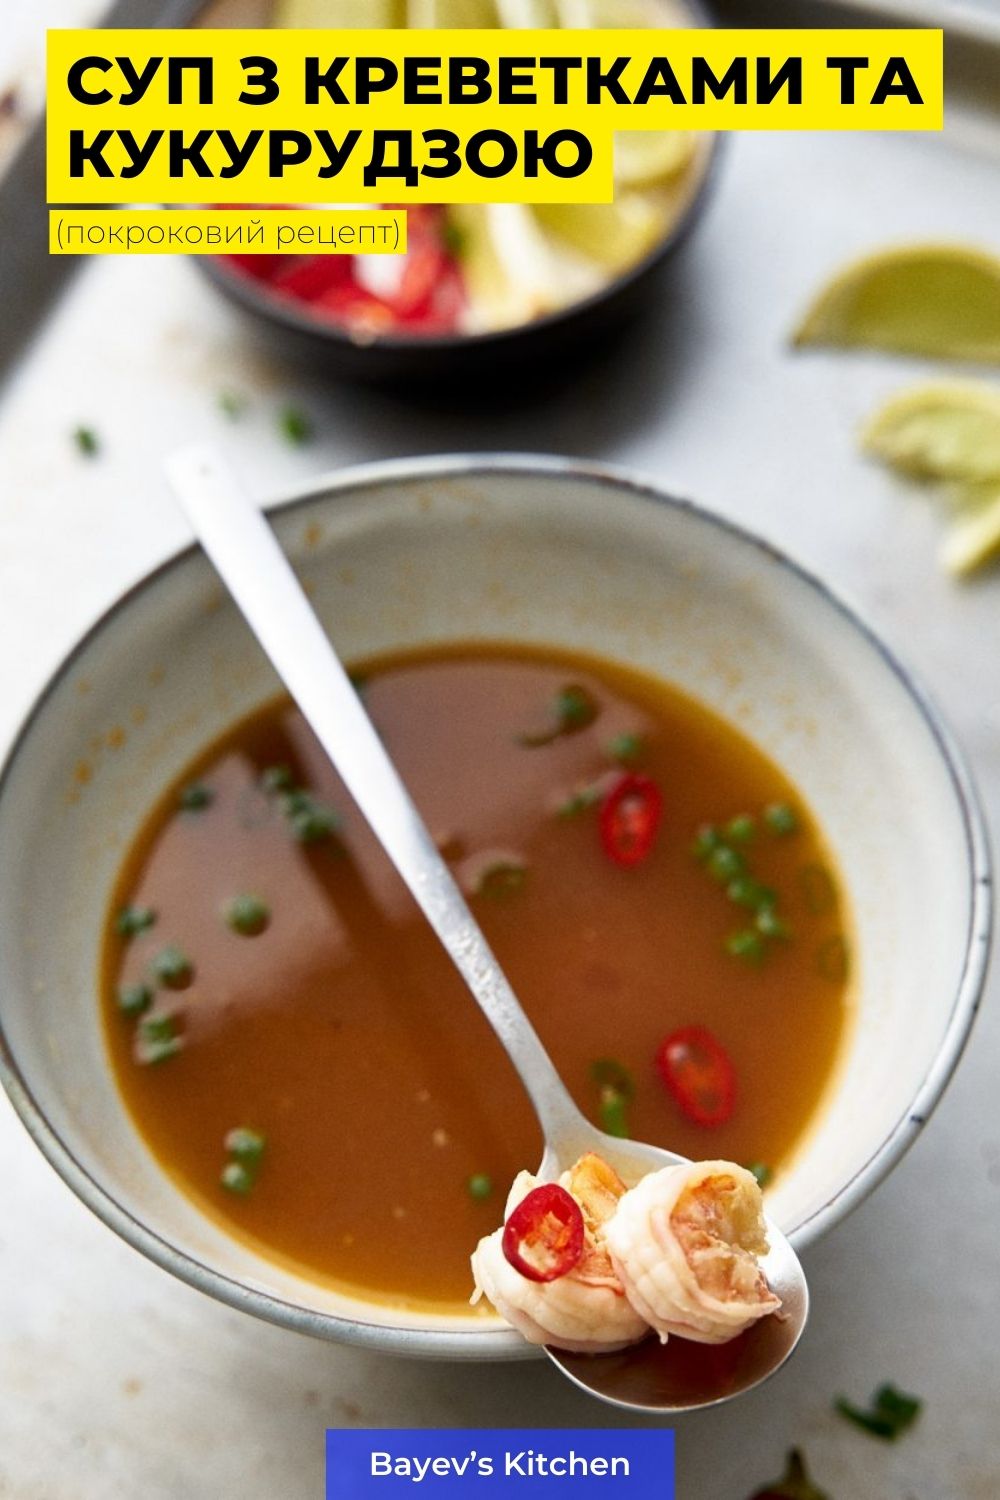 Простий у приготуванні суп з креветками та кукурудзою на основі курячого бульйону. Курячий бульйон, за бажання ви можете замінити рибним або навіть скористатися бульйонним кубиком, але бульйон, свіжий або заморожений звичайно ж буде кращим. Готується суп досить швидко, найнудніше - очистити креветки і видалити чорні жилки, з цим доведеться повозиться.